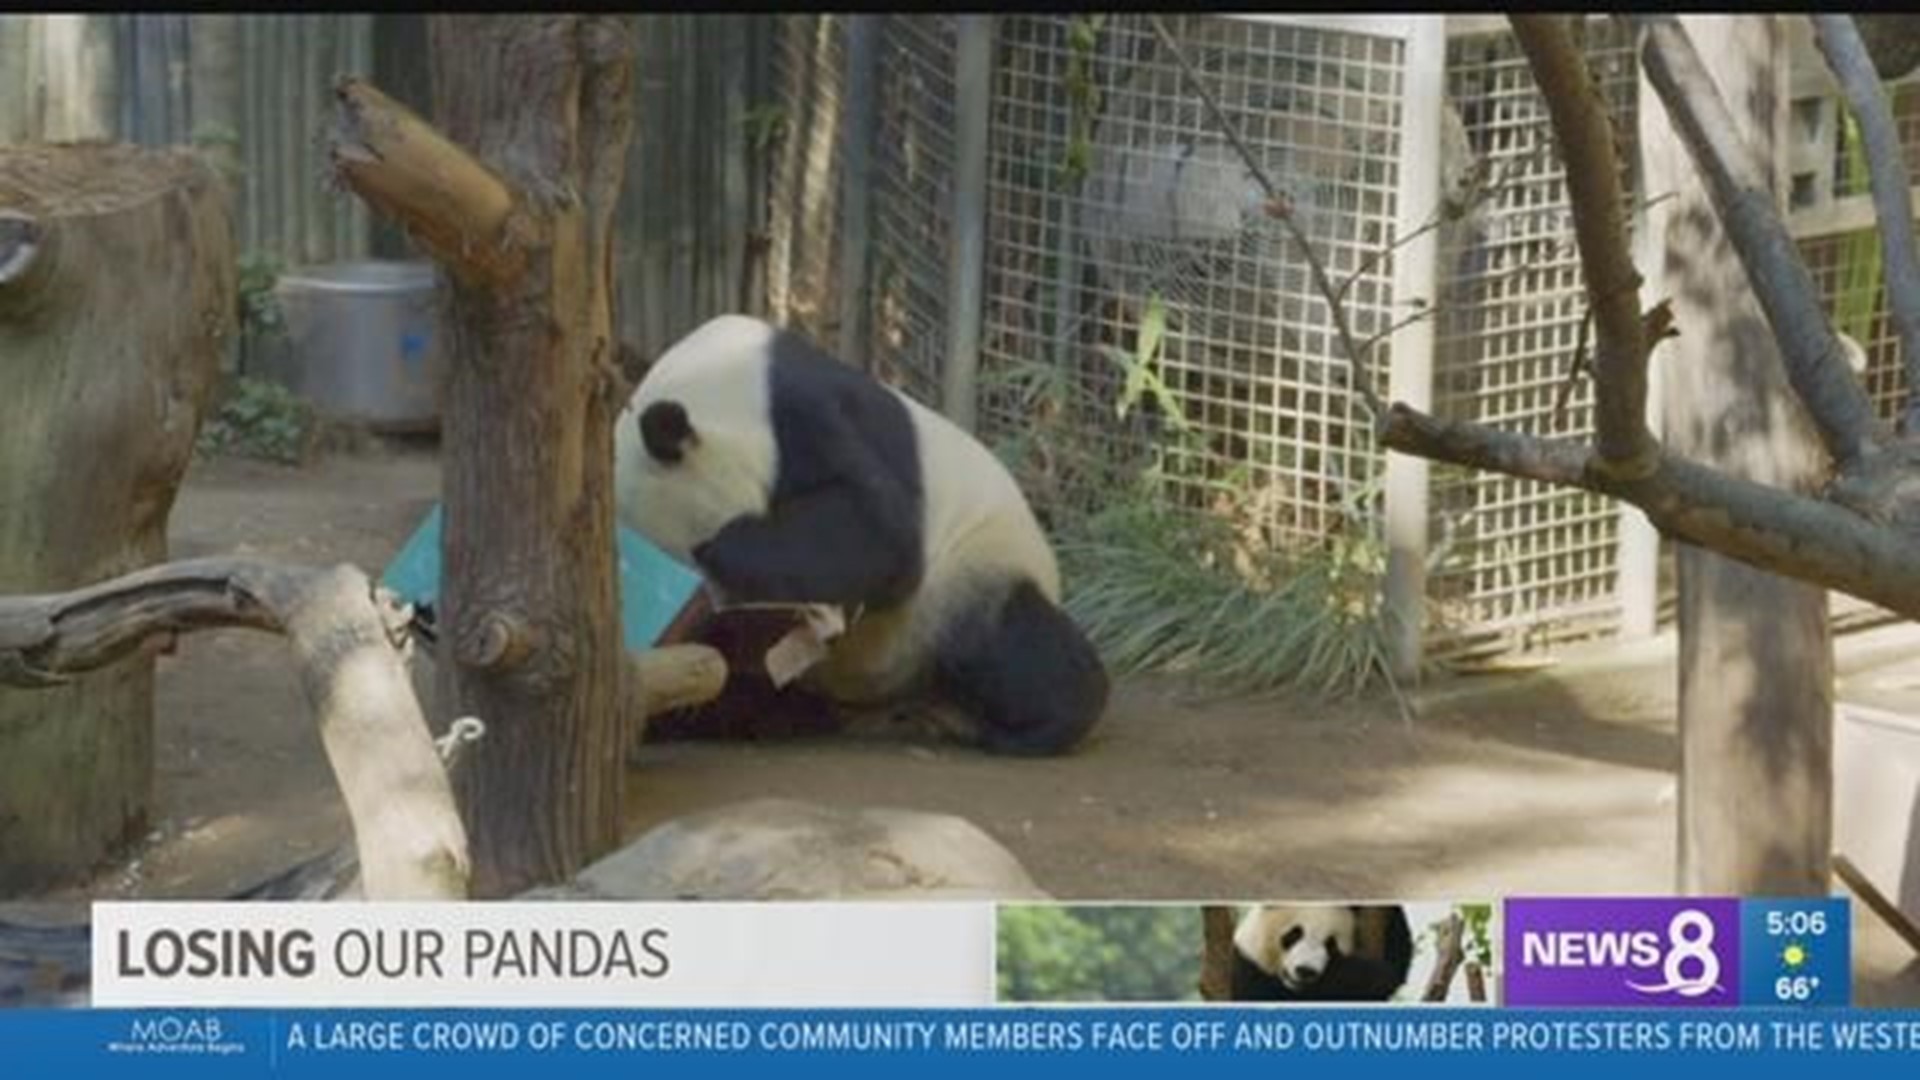 Surprise! Giant pandas may return to San Diego - The San Diego Union-Tribune